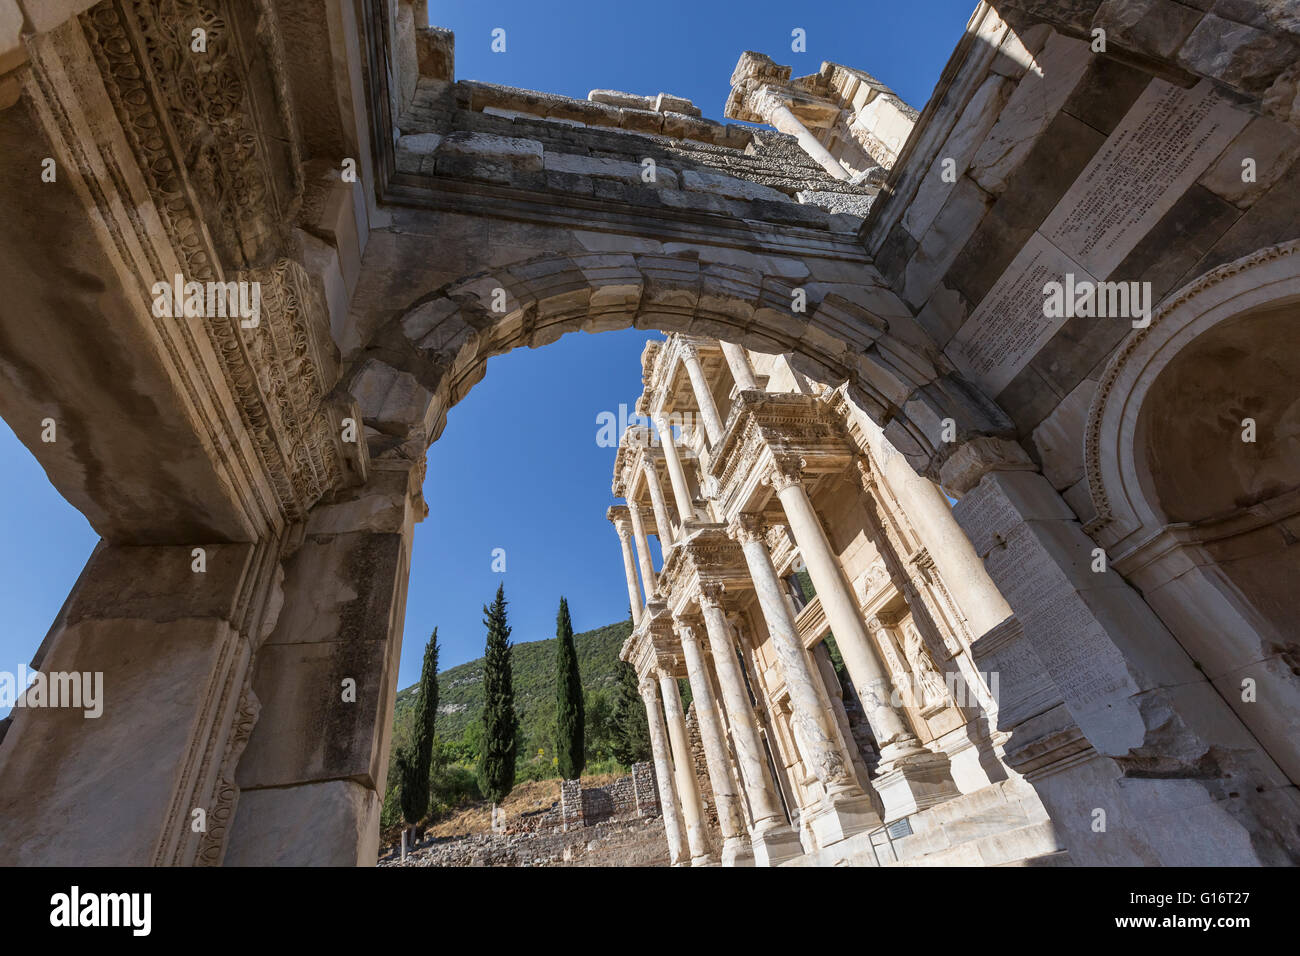 Library of Celsus, Ephesus, Turkey Stock Photo